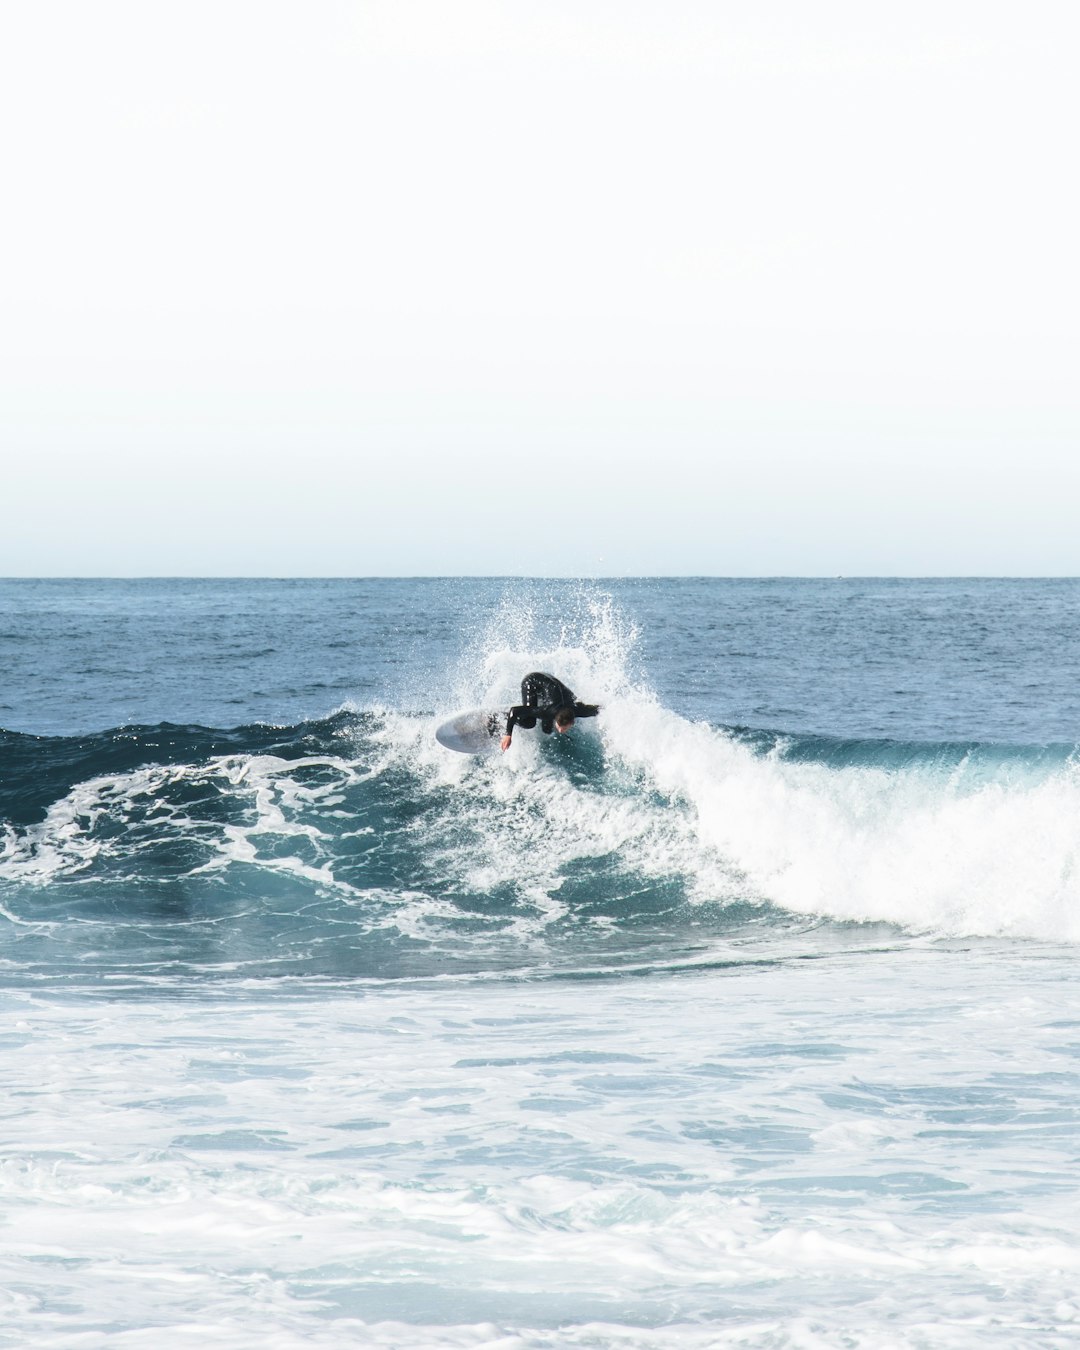 Surfing photo spot Sydney Bondi